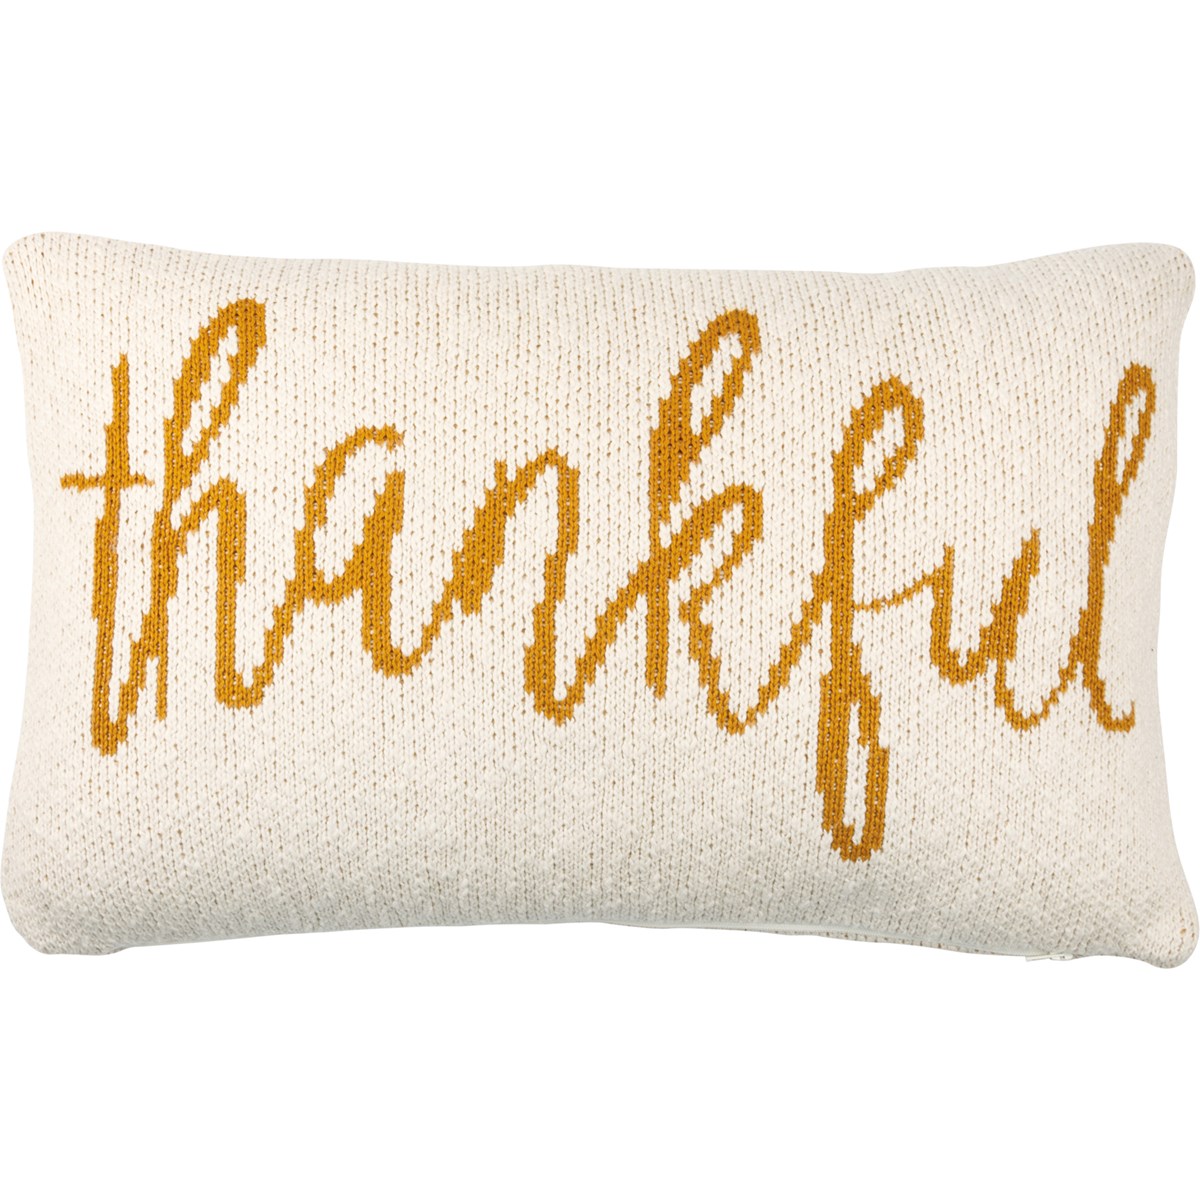 Thankful Pillow - Cotton, Zipper